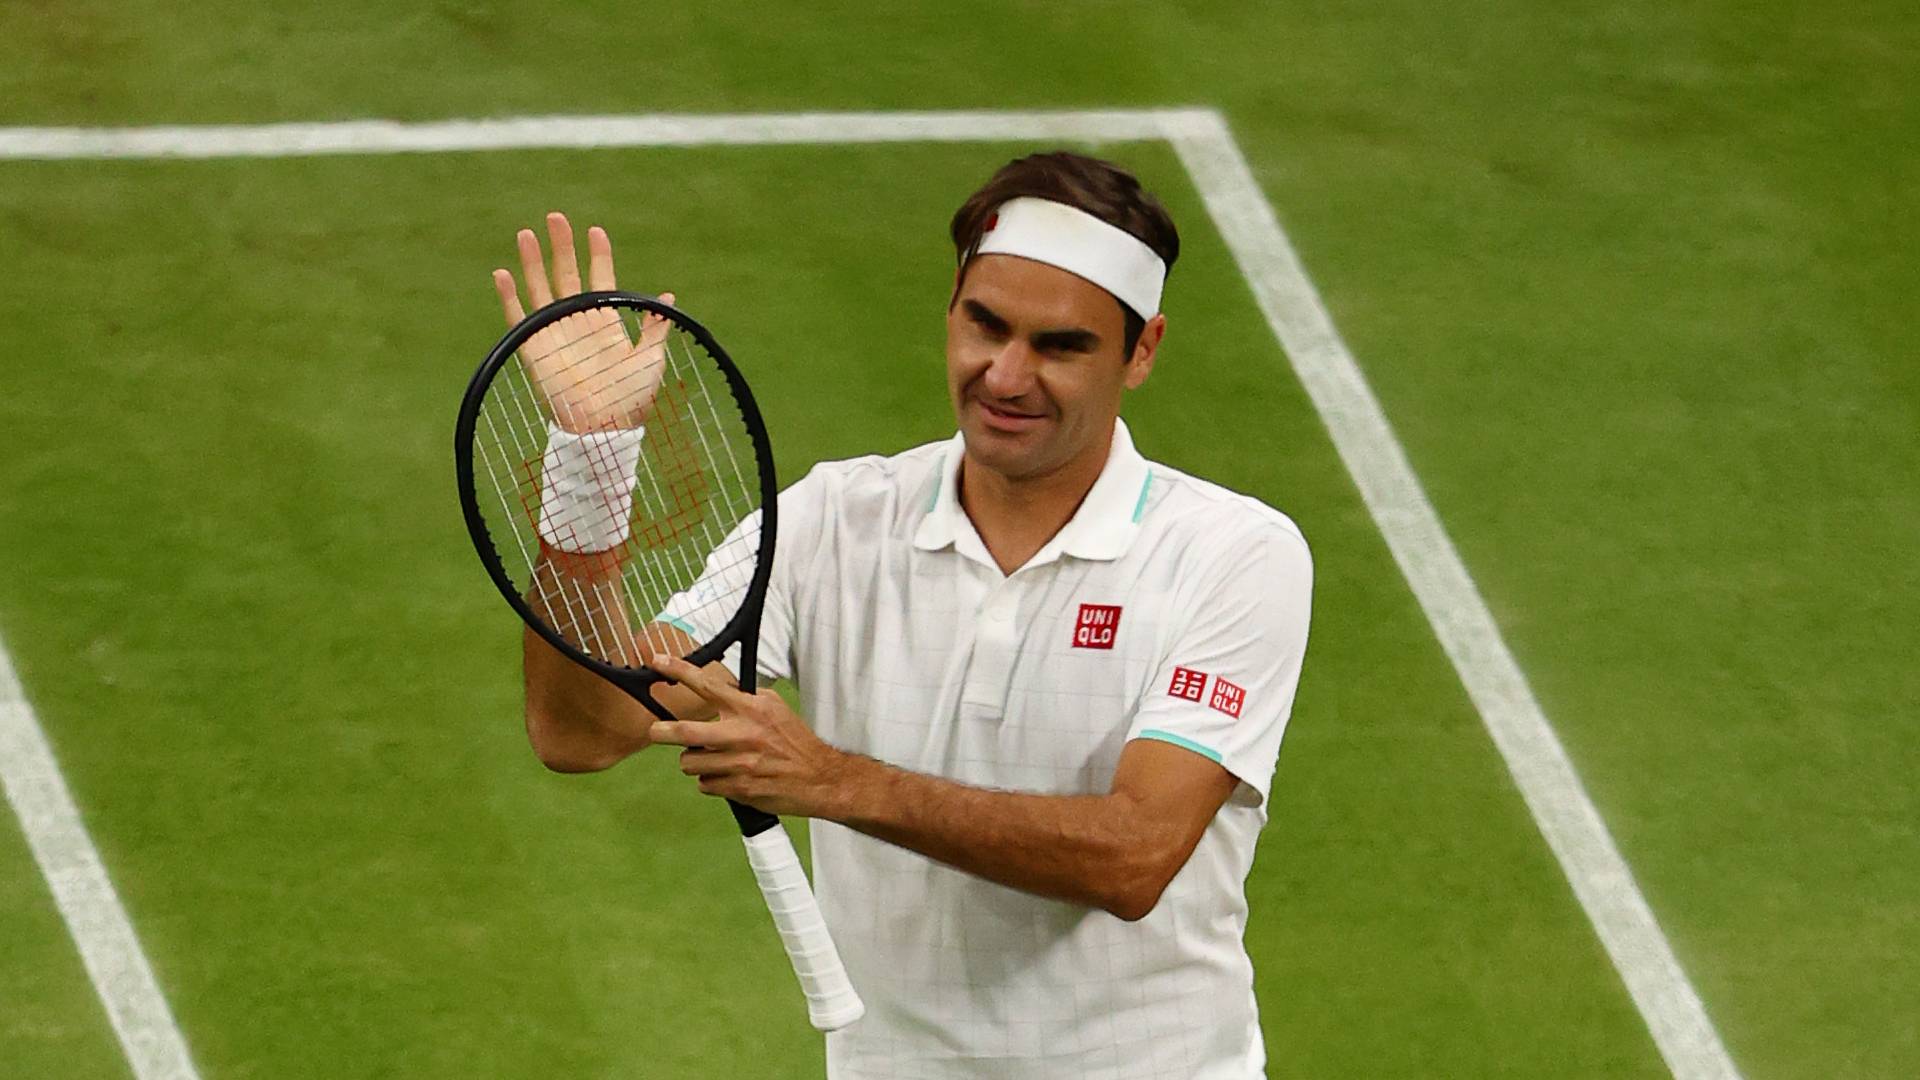 Roger Federer si ritira con un video: "Grazie a tutti, è stata un'avventura incredibile"